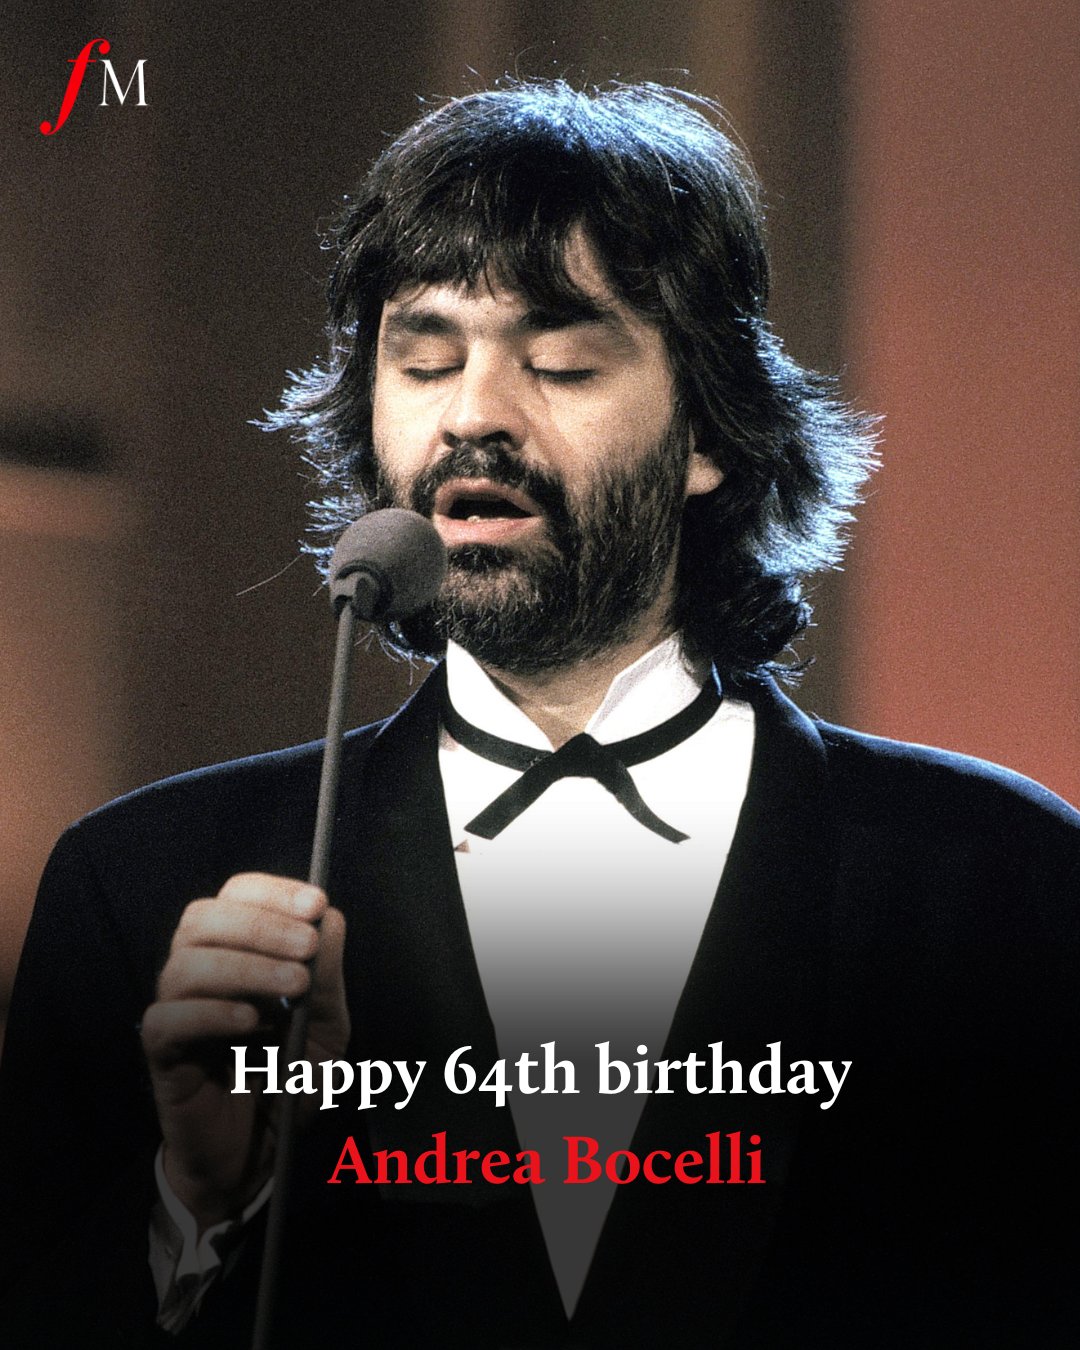 A very happy 64th birthday to star tenor Andrea Bocelli. 